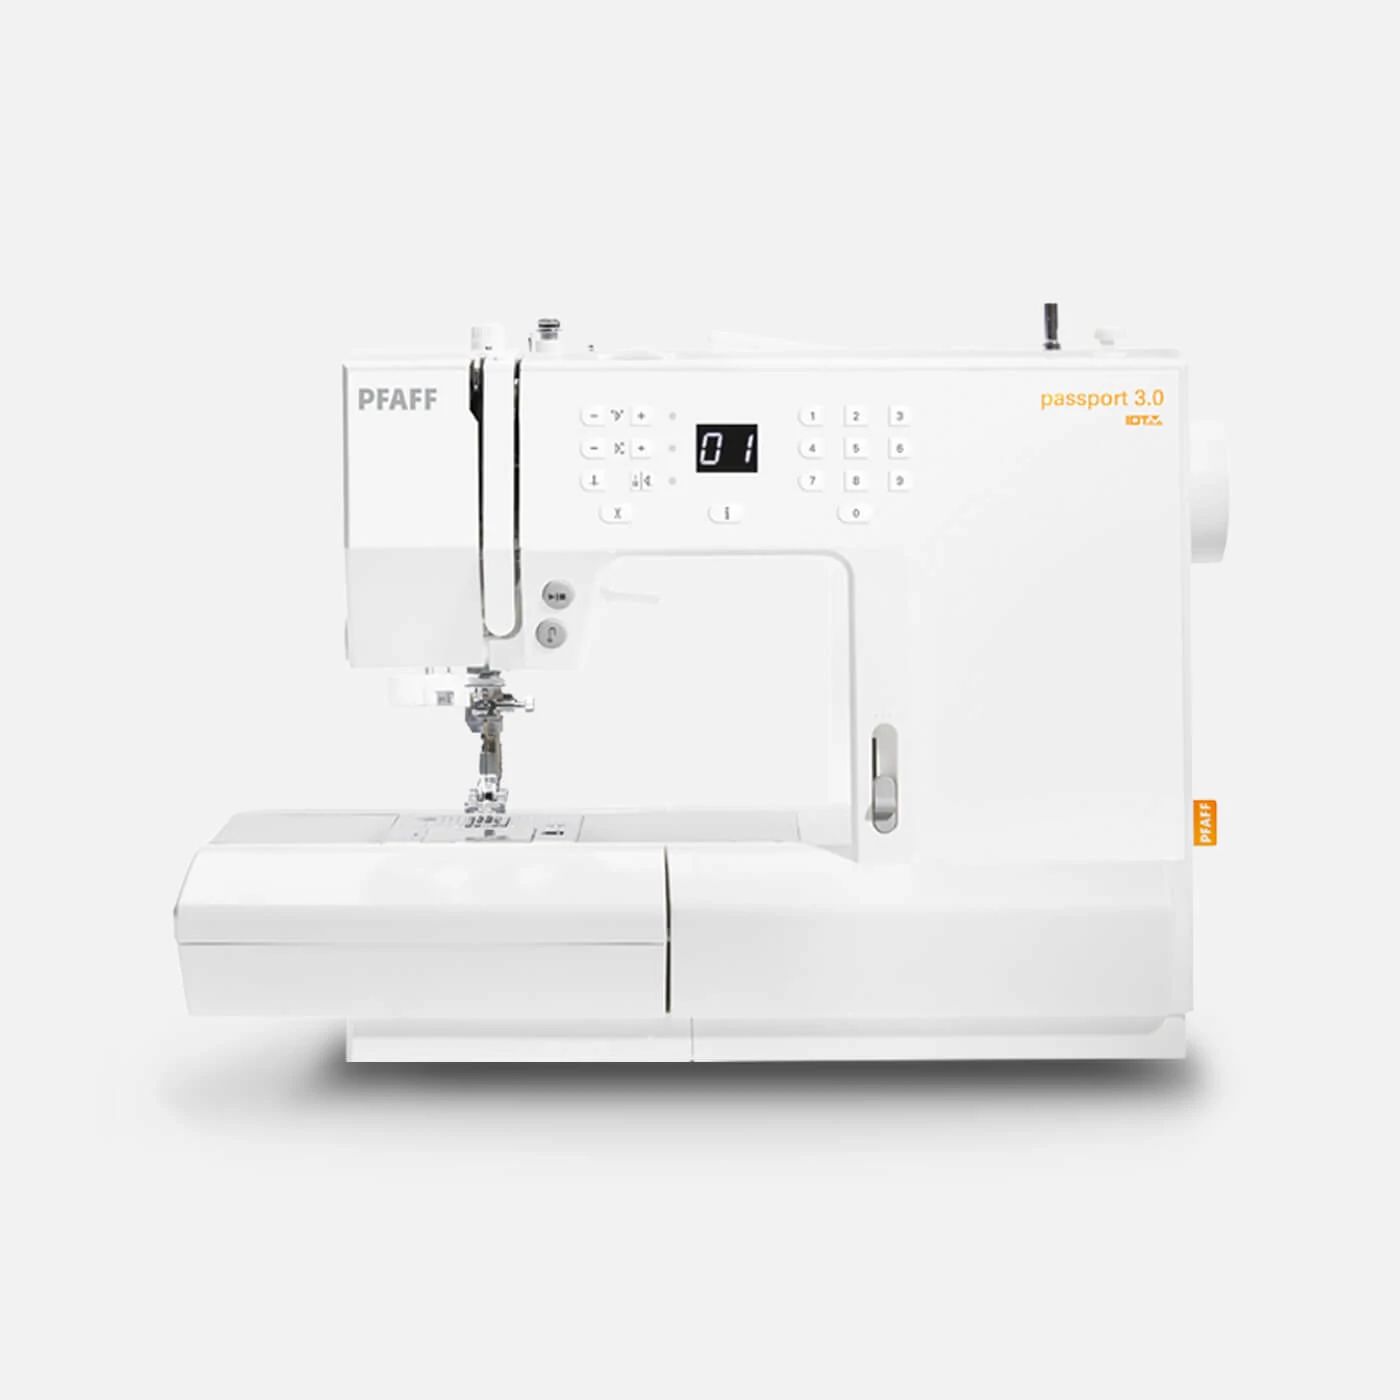 select™ 4.2 Sewing Machine